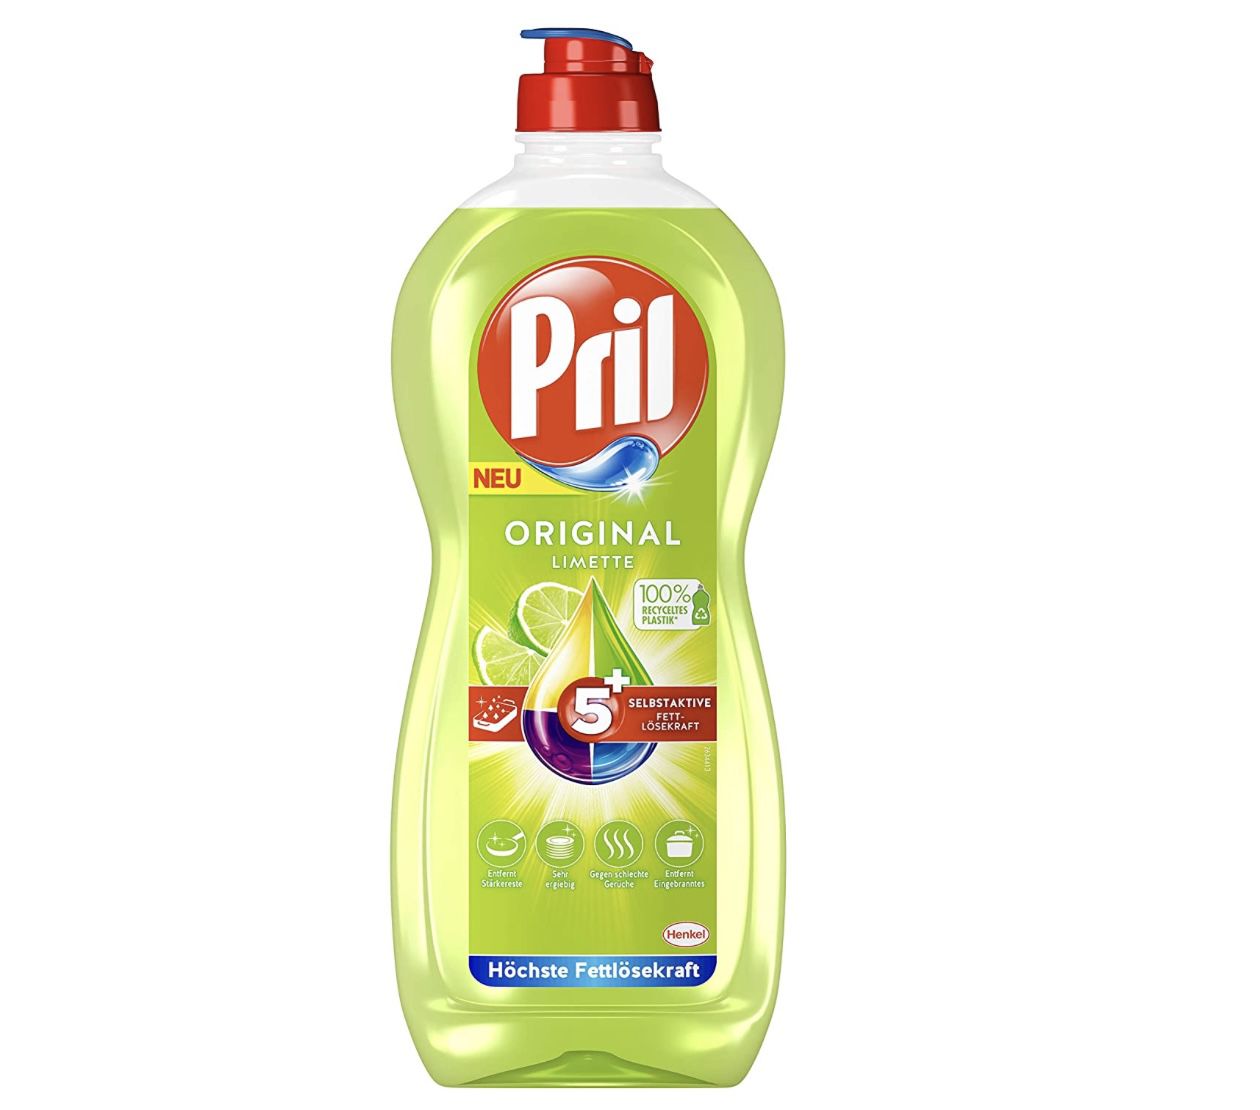 Pril 5 Plus Original Limette 675ml Handgeschirrspülmittel für 0,79€   Prime Sparabo